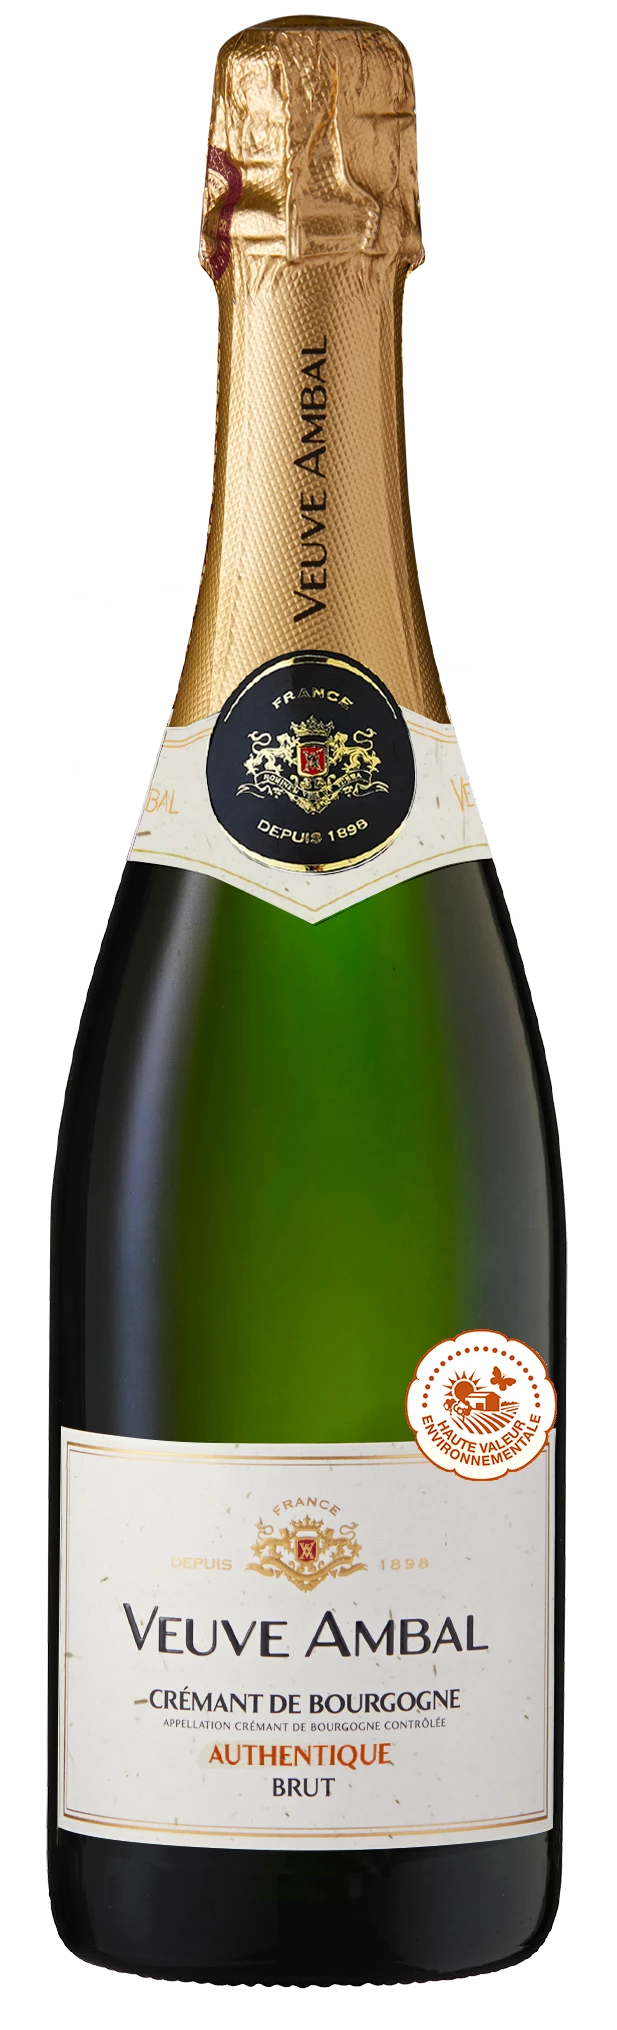 Crémant de Bourgogne Brut Authentique 12% 75cl VEUVE AMBAL